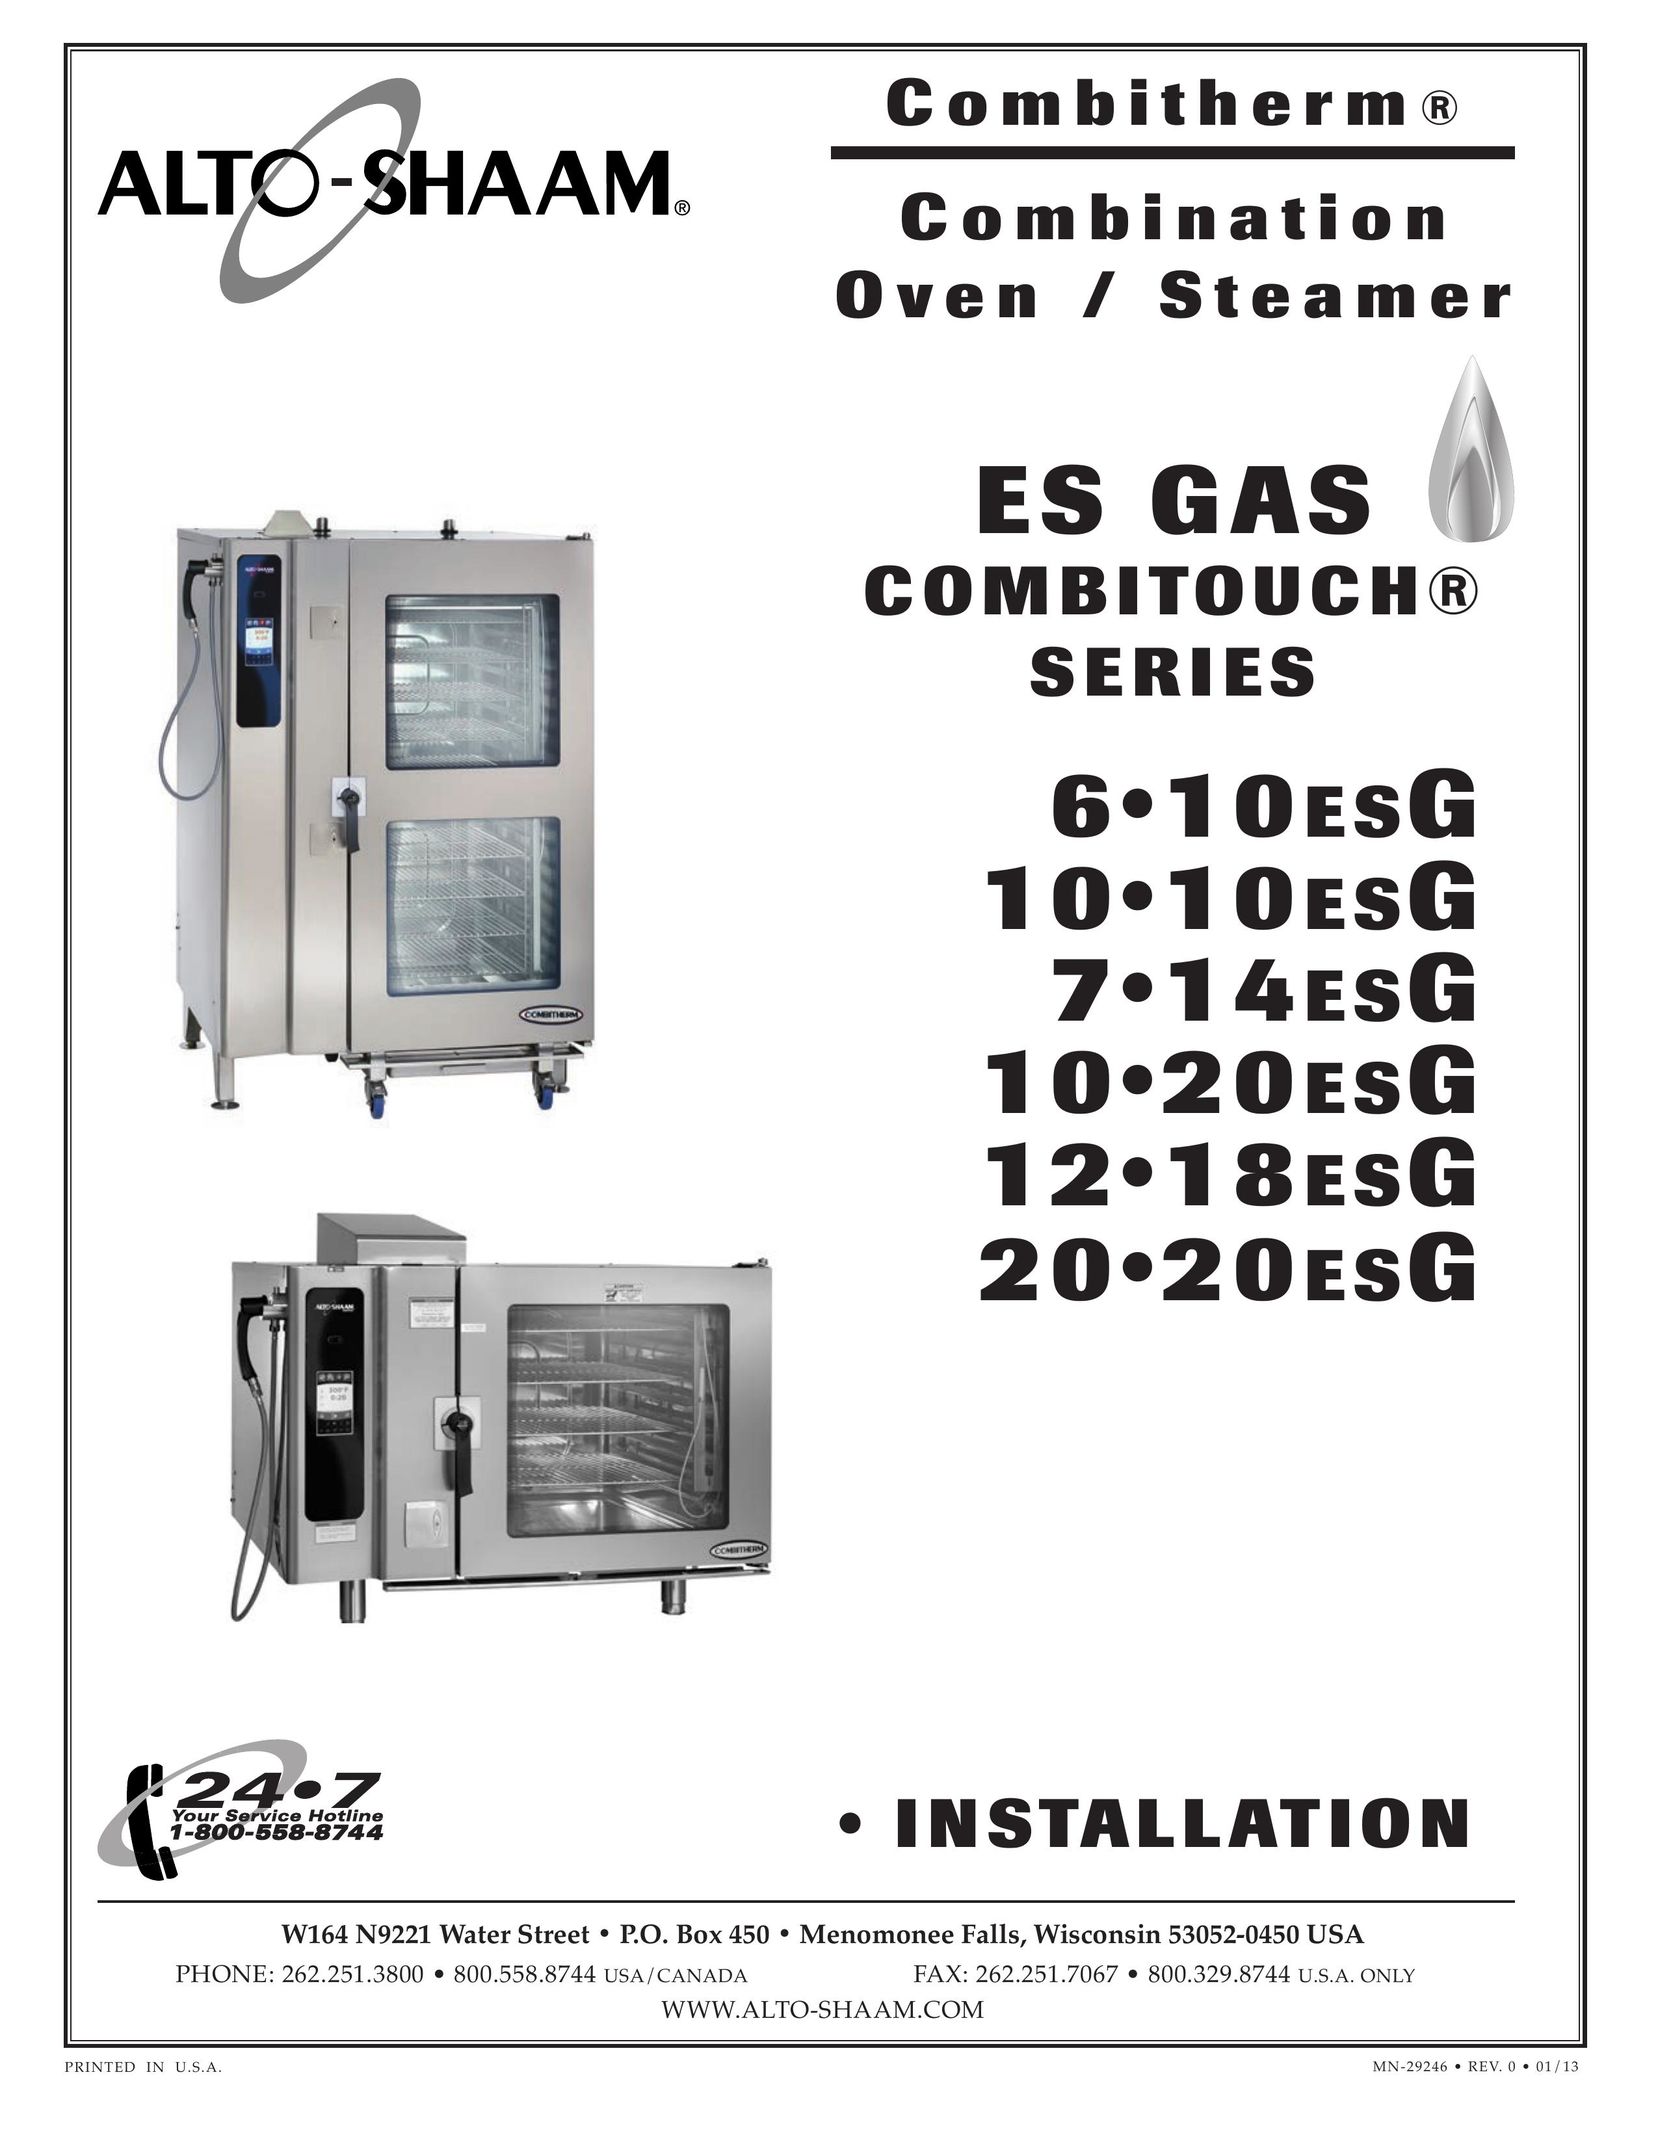 Alto-Shaam 1020ESG Oven User Manual